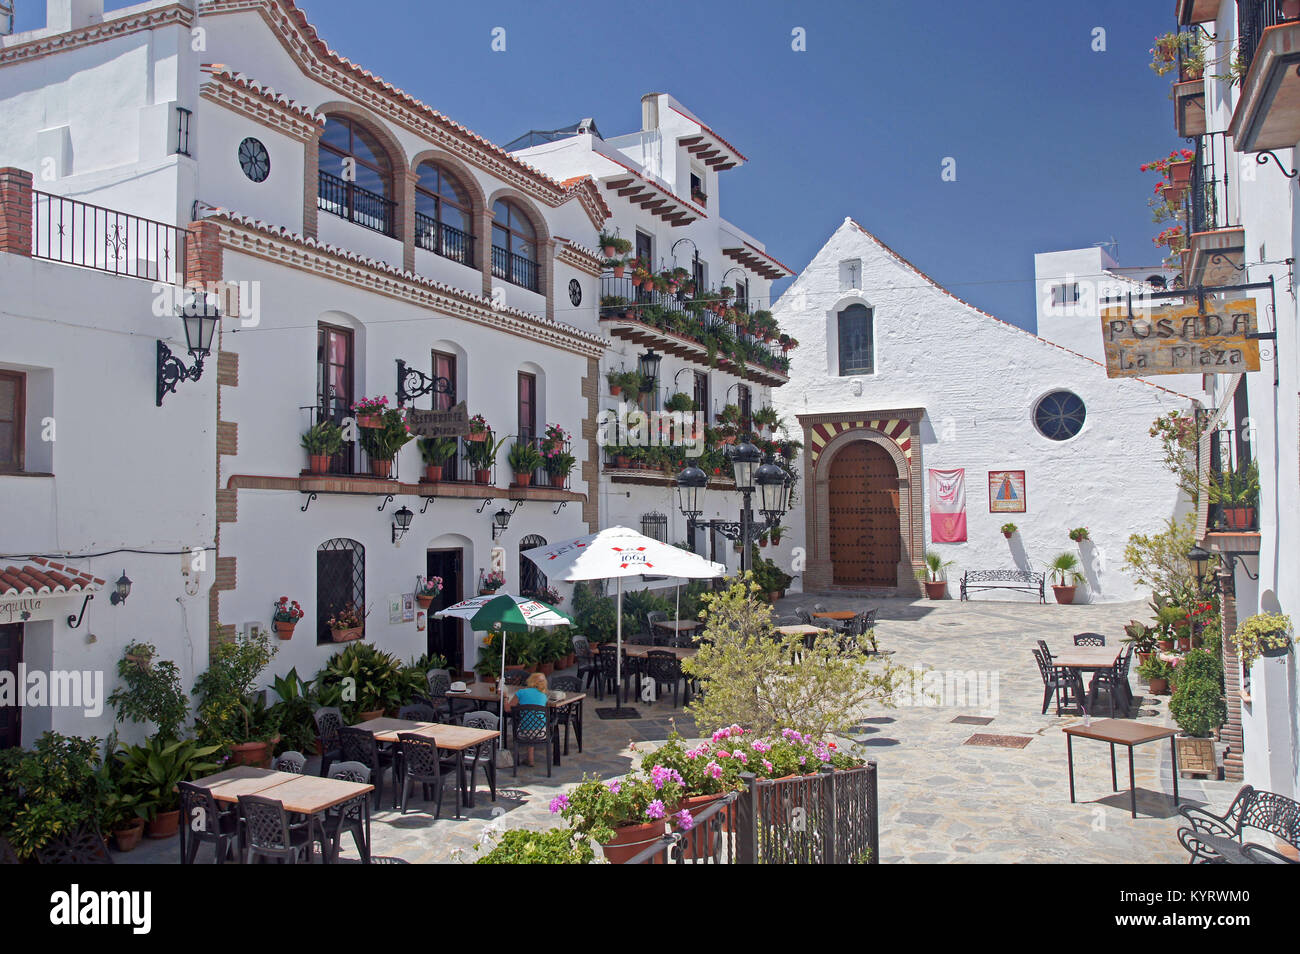 Andalucia in Spain: the pretty peublo blanco of Canillas de Albaida Stock Photo